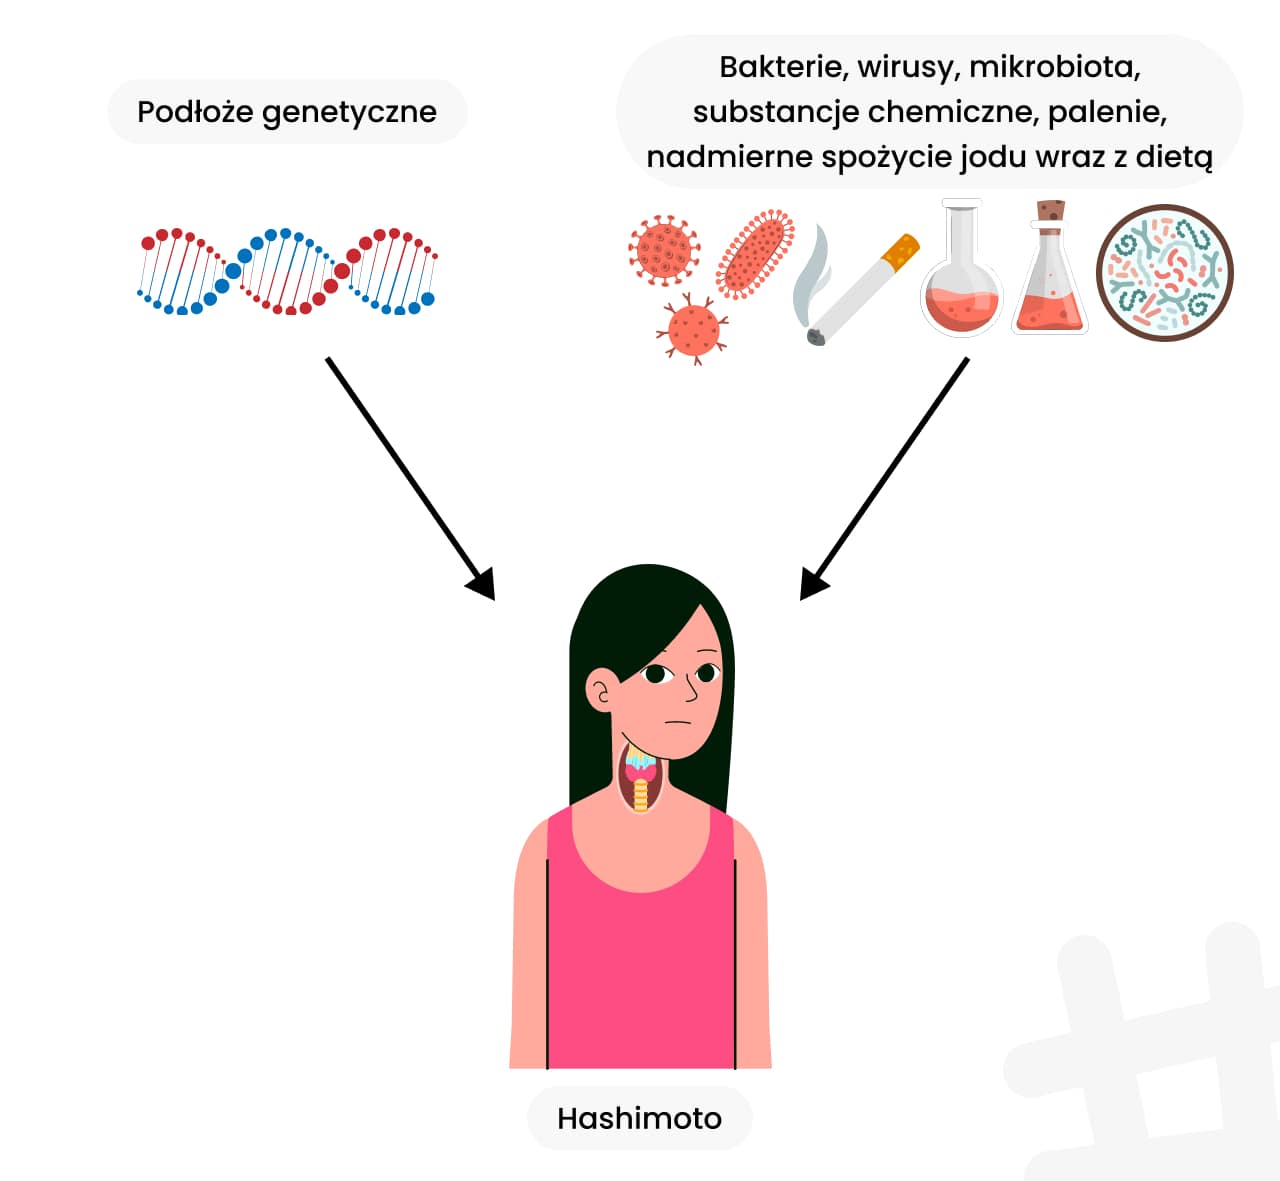 Co składa się na Hashimoto? Podłoże genetyczne oraz bakterie, wirusy, mikrobiota, substancje chemiczne, palenie, nadmierne spożycie jodu wraz z dietą